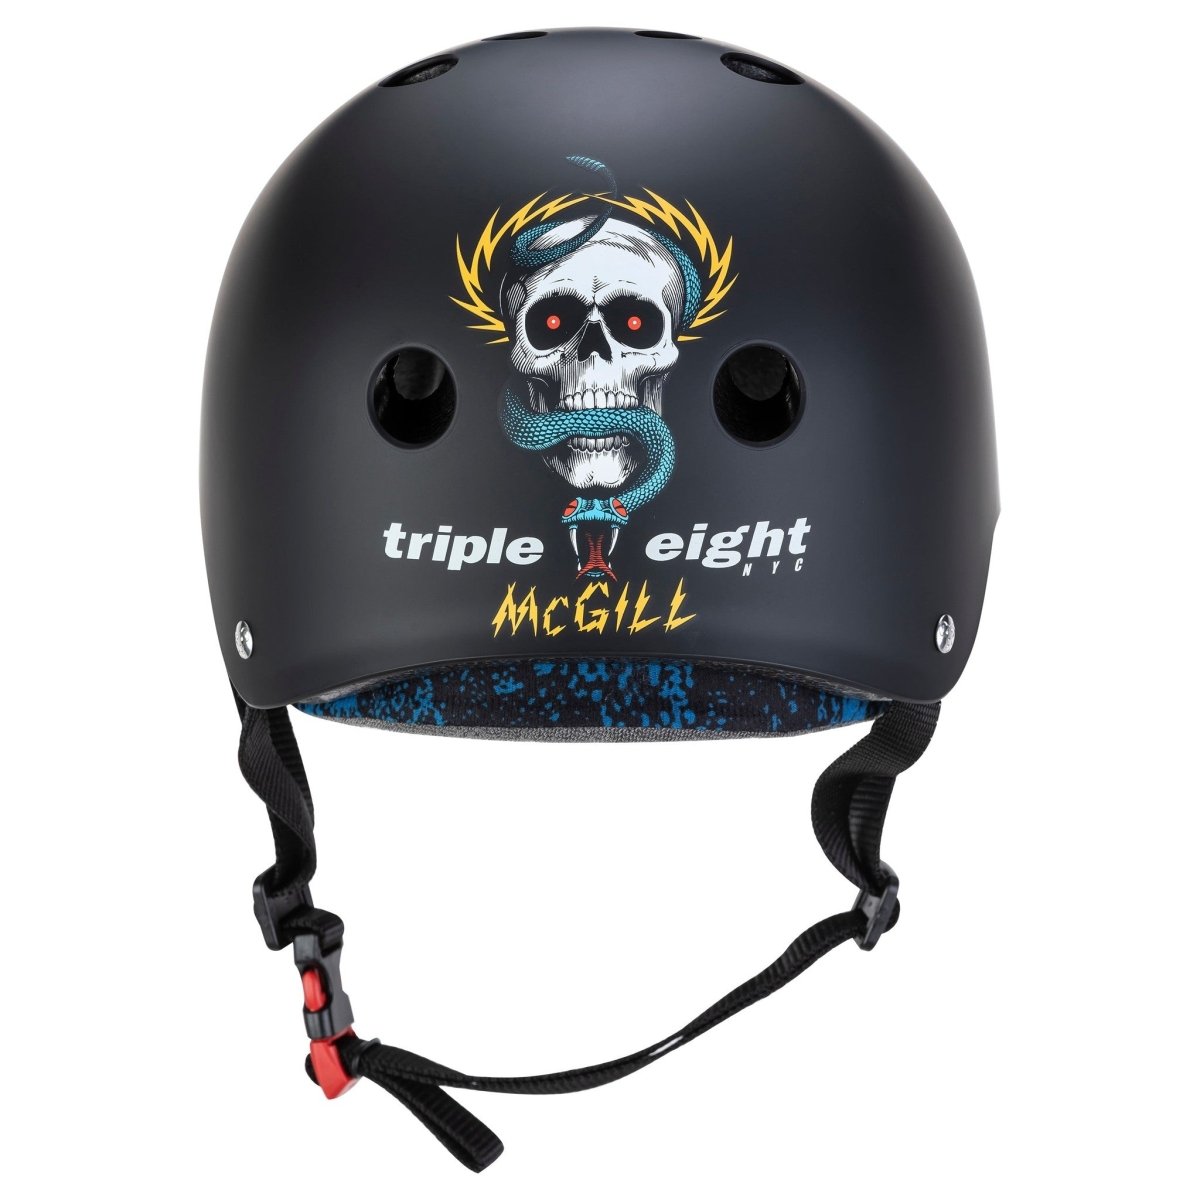 Cert Sweatsaver Helmet - Mike McGill - XS/S - Gear - Helmets